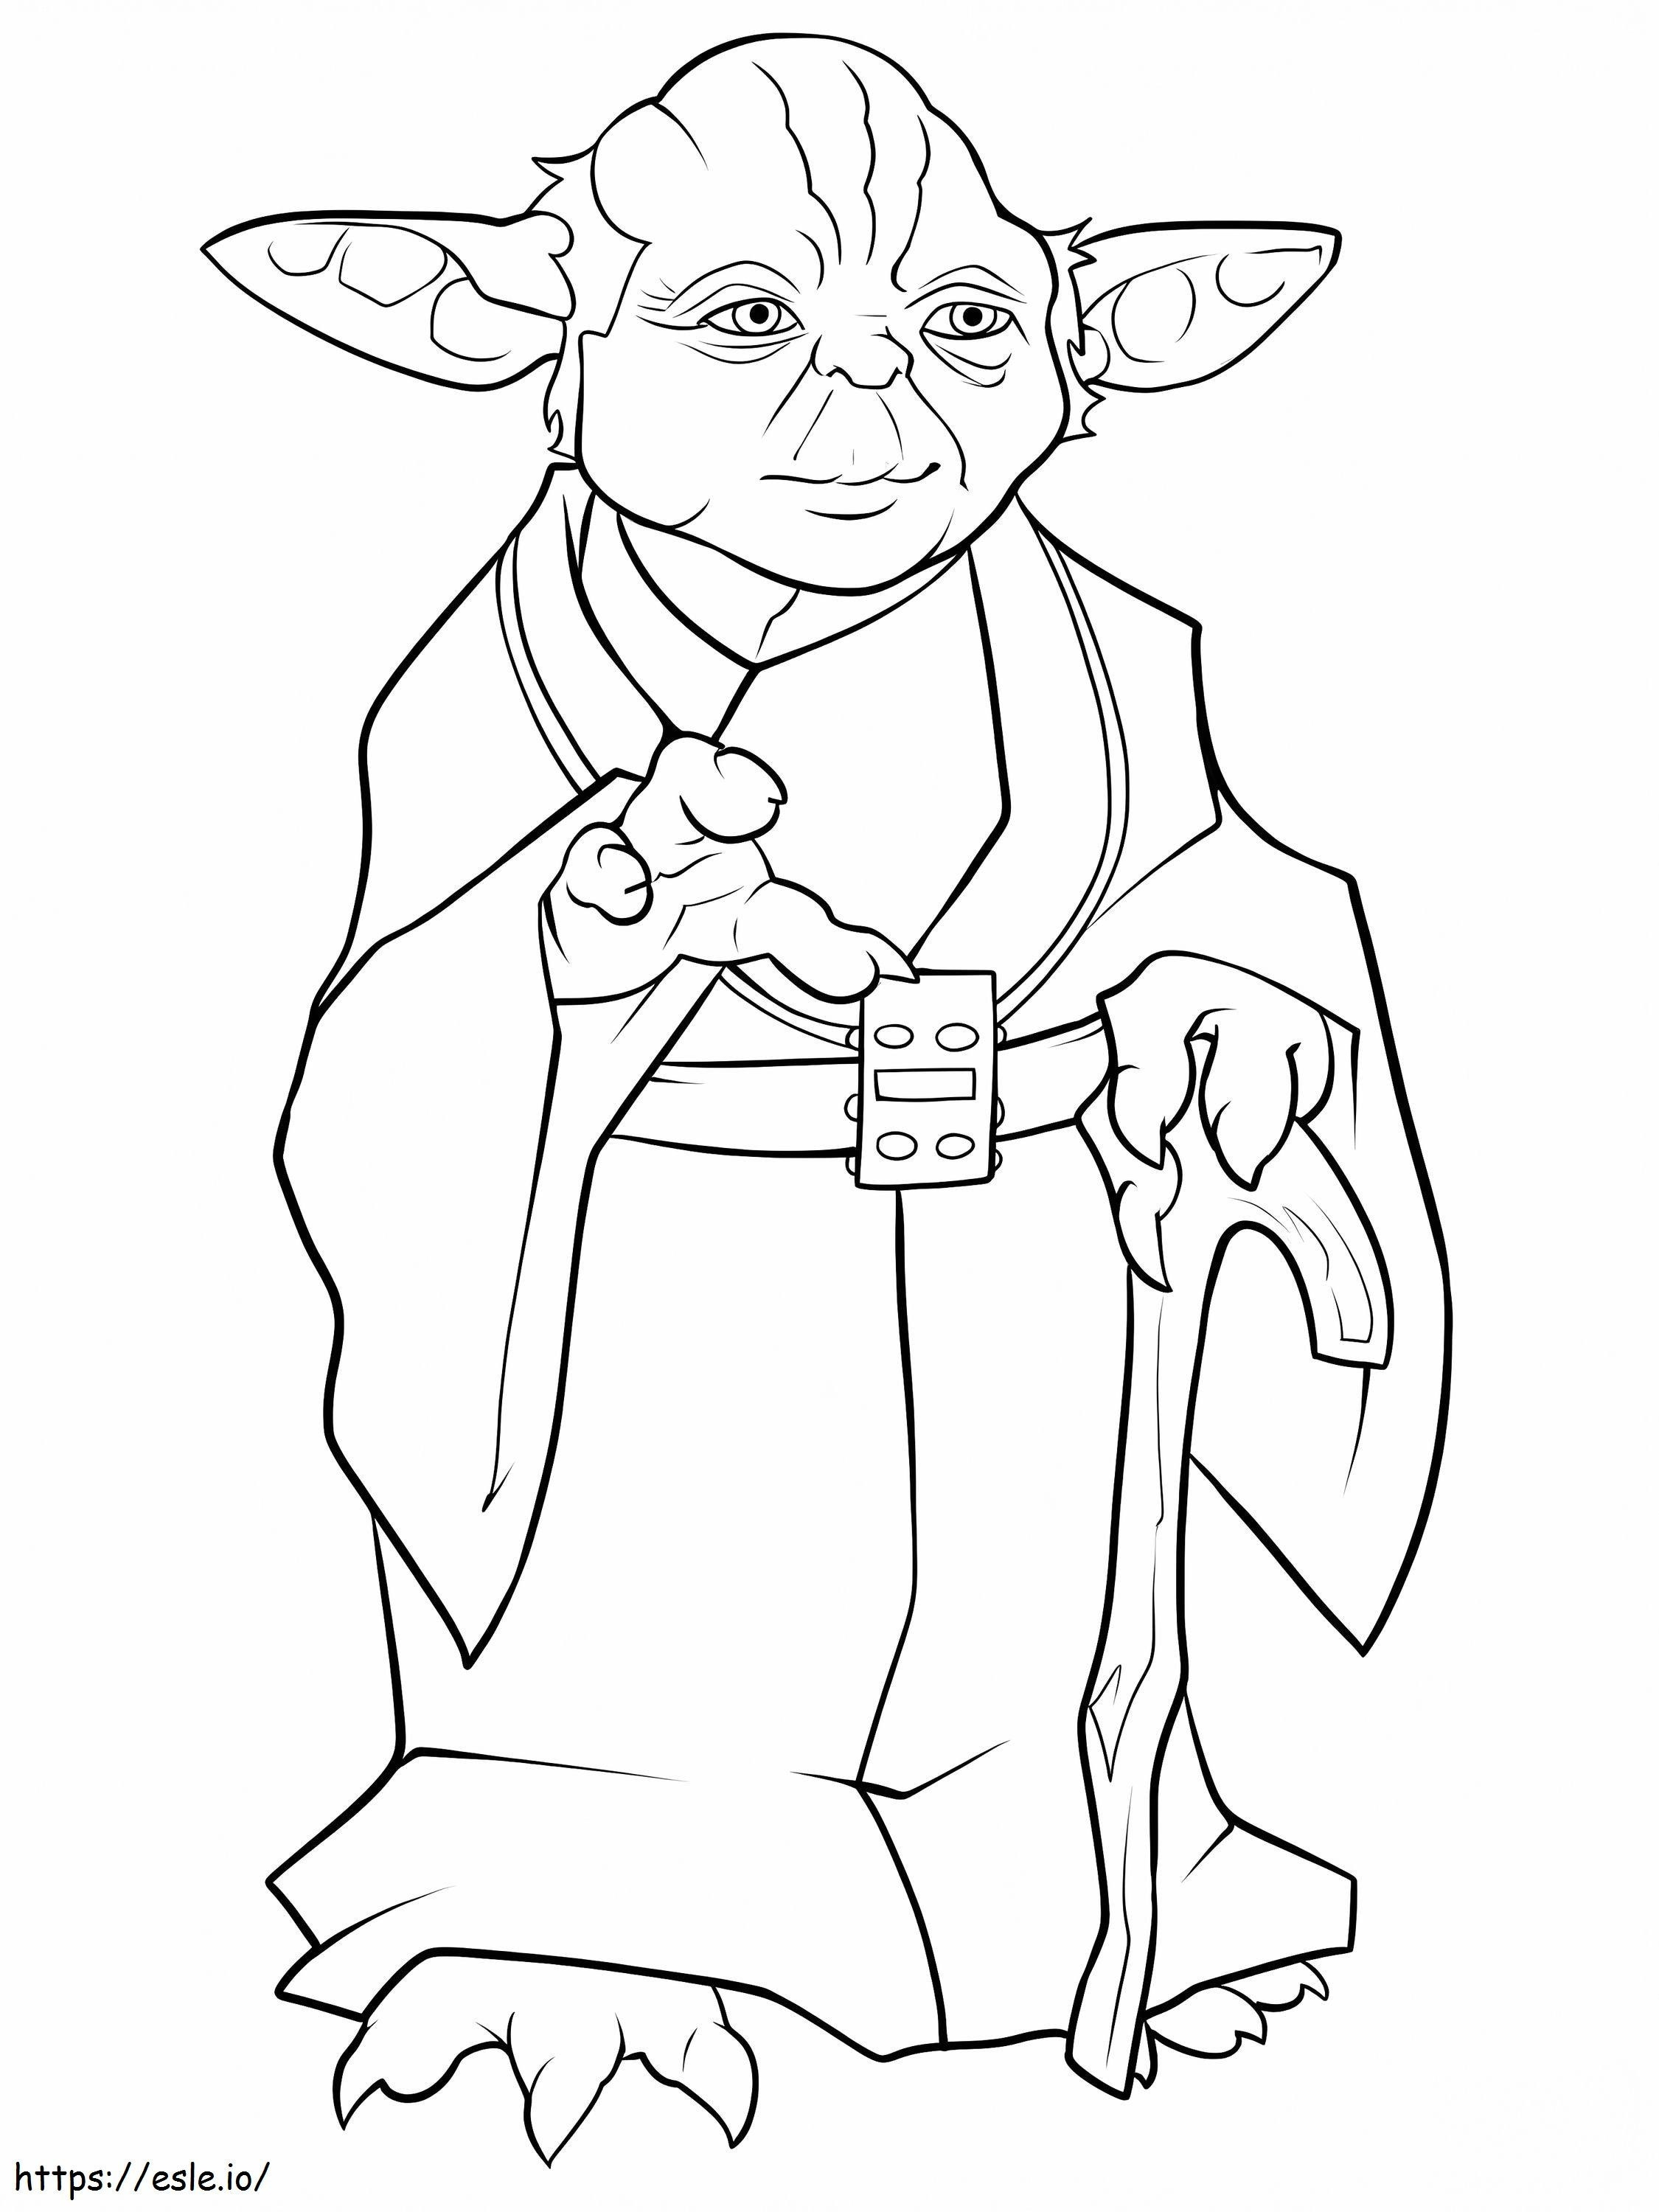 Yoda De Star Wars Gambar Mewarnai